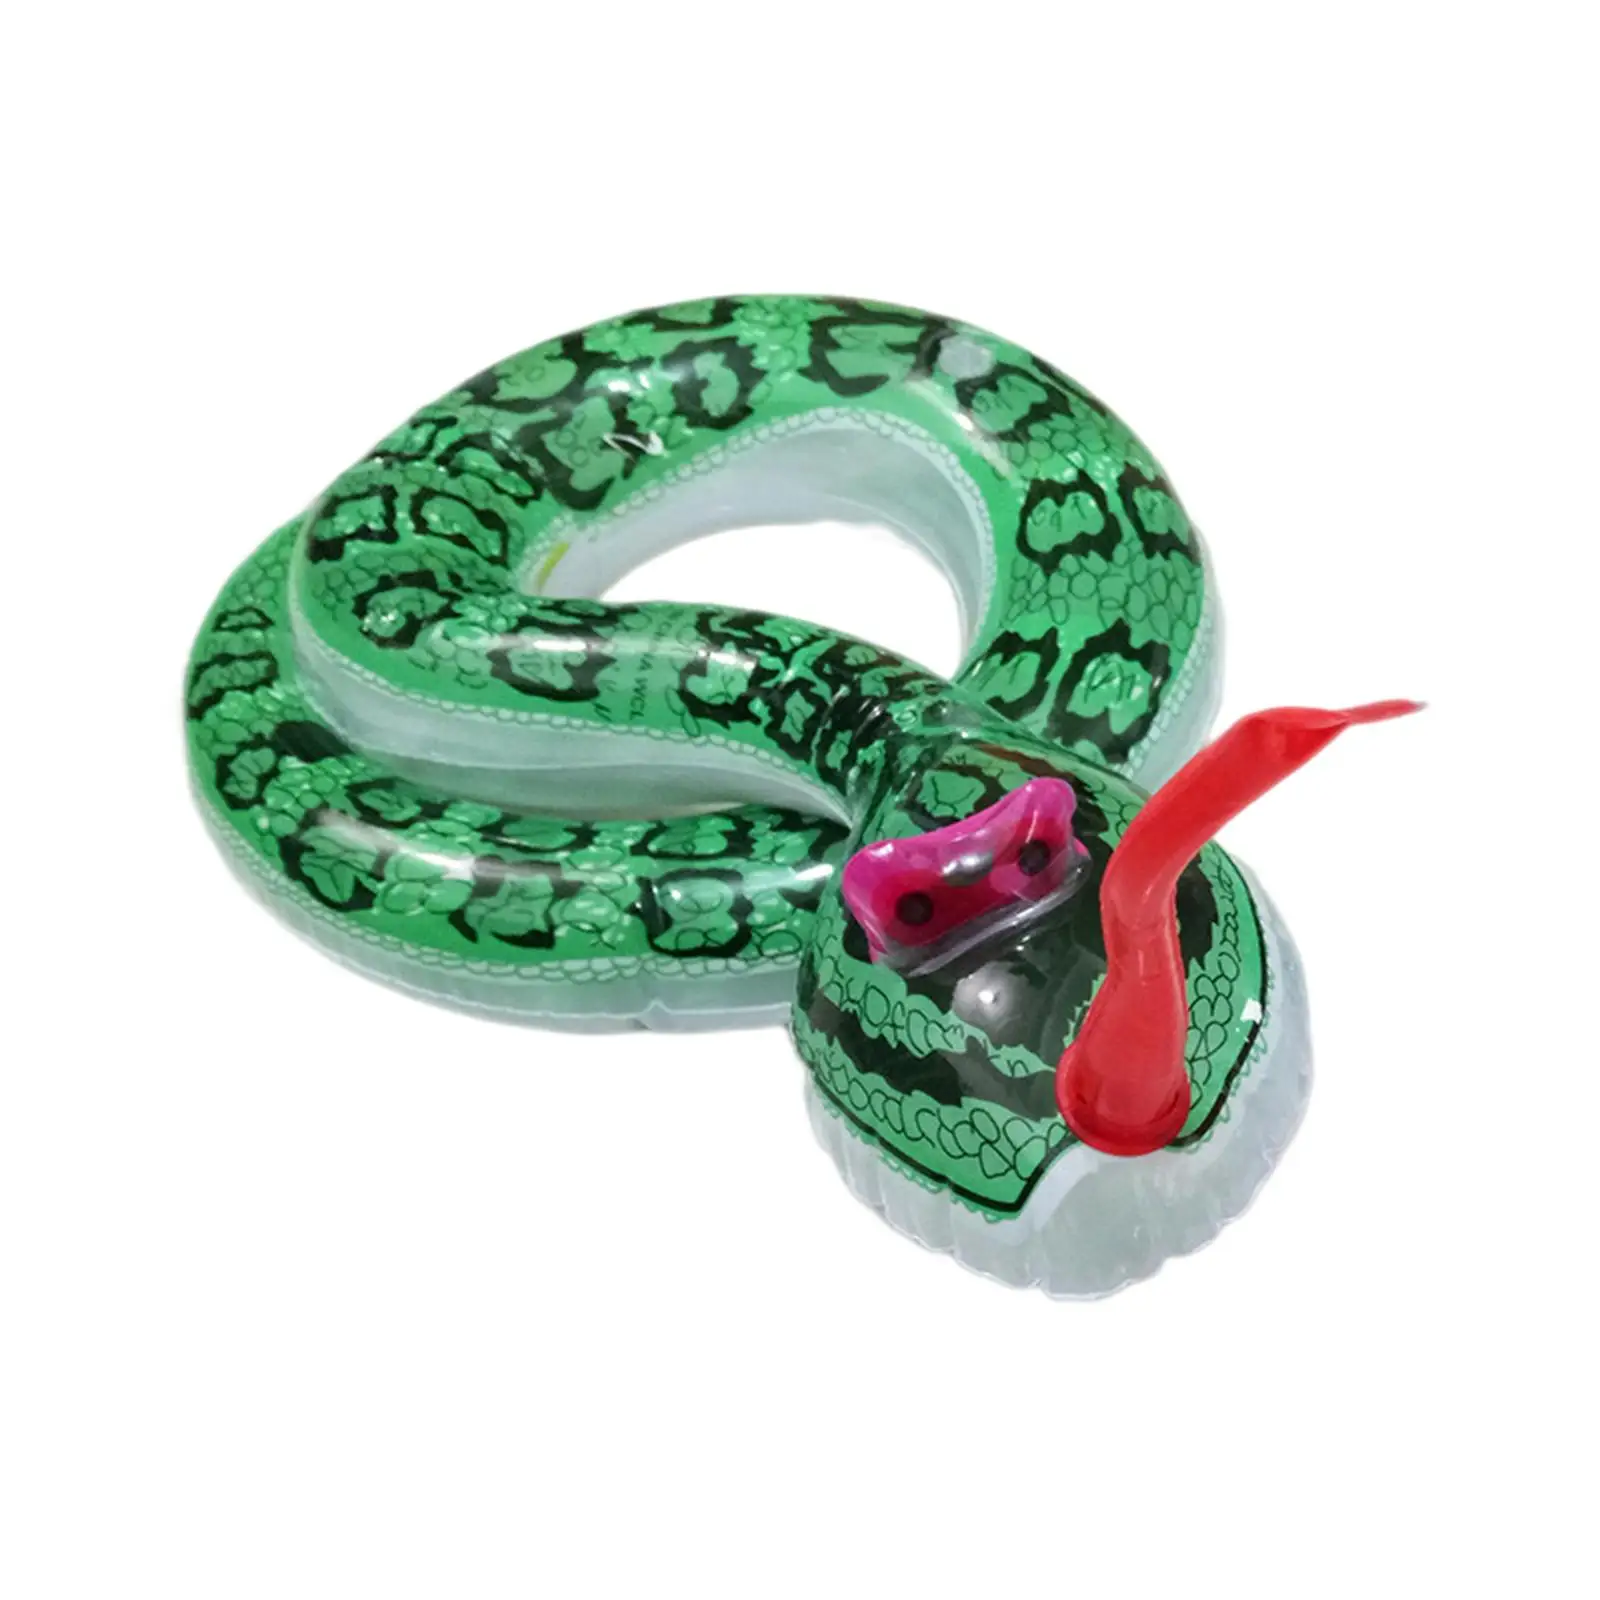 

Фигурка животного, забавная Реалистичная надувная змея, настольное украшение, игрушка для дурака апреля, розыгрыши, искусственная игрушка